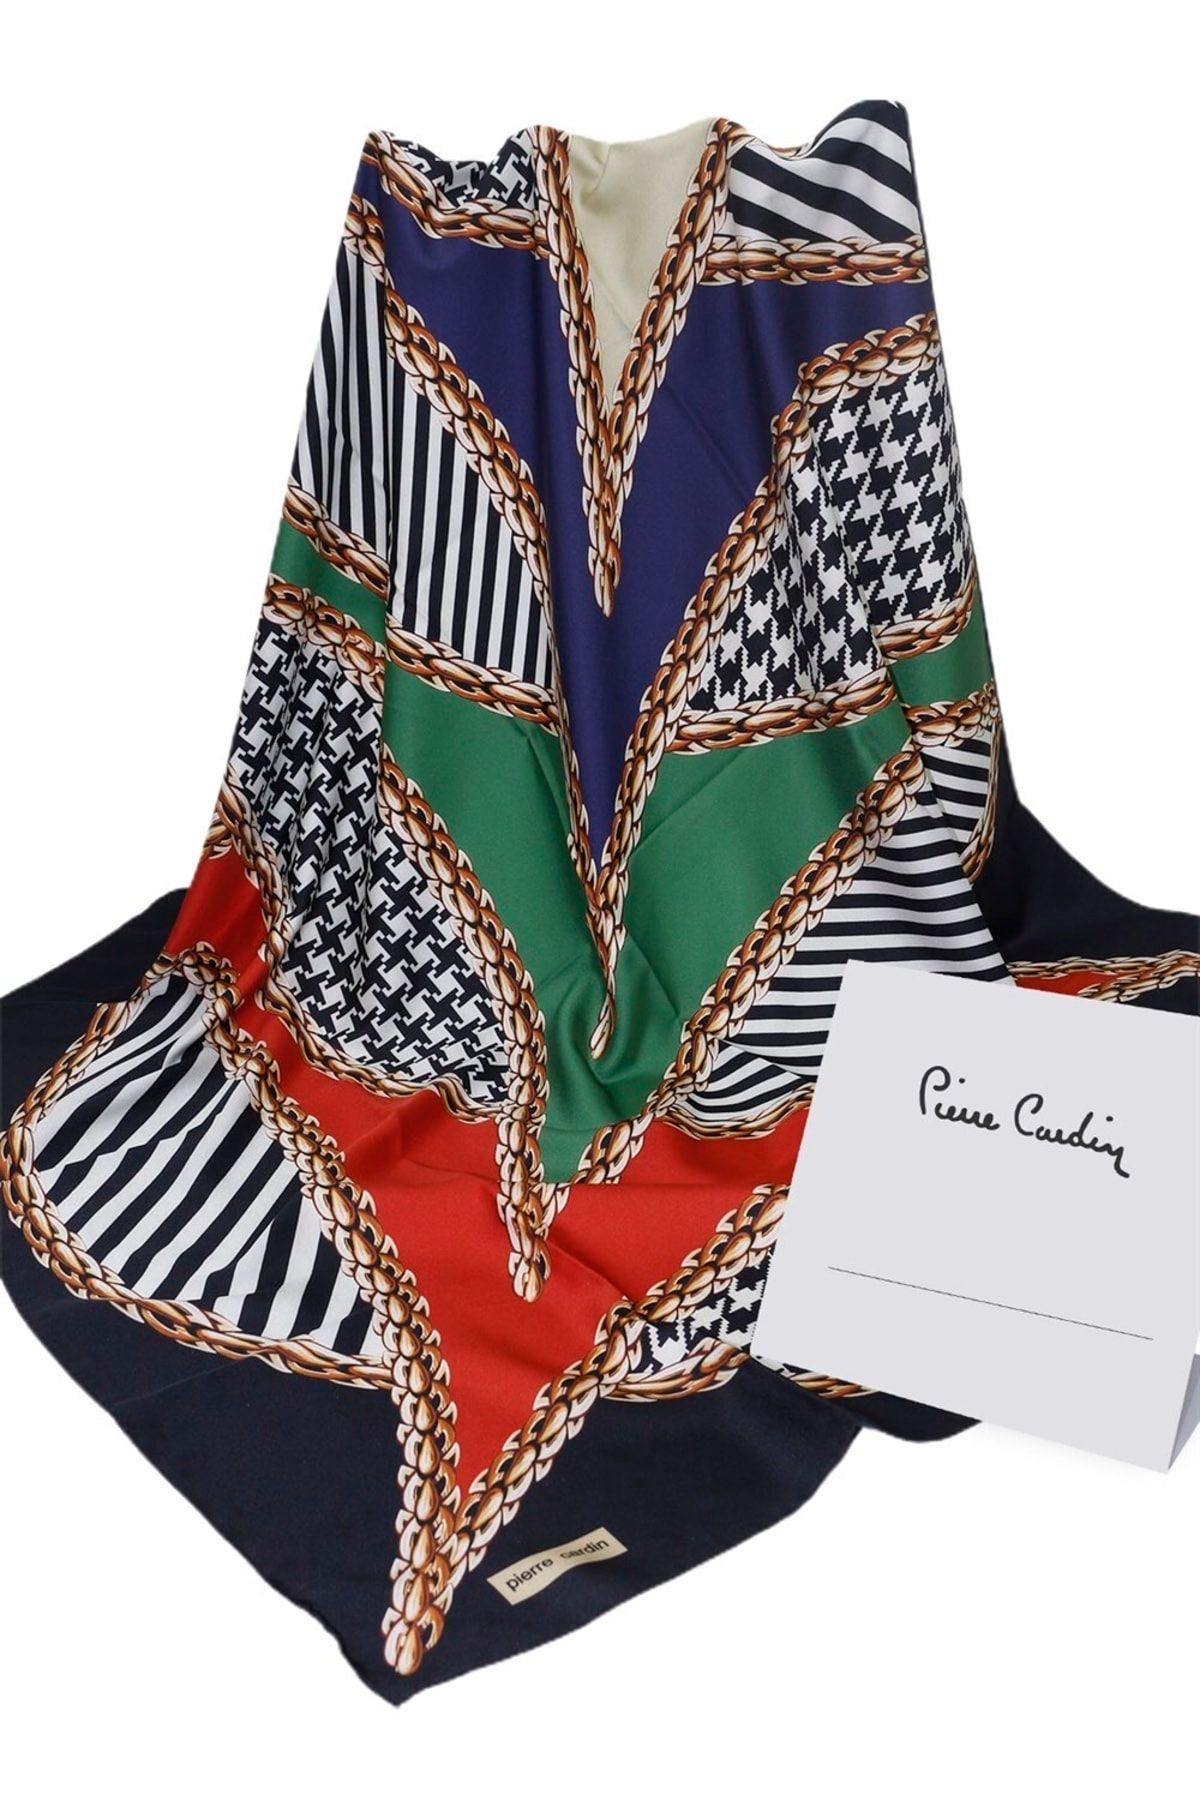 روسری جناغی پلی استر طرحدار زنانه پیر کاردین Pierre Cardin (برند فرانسه)